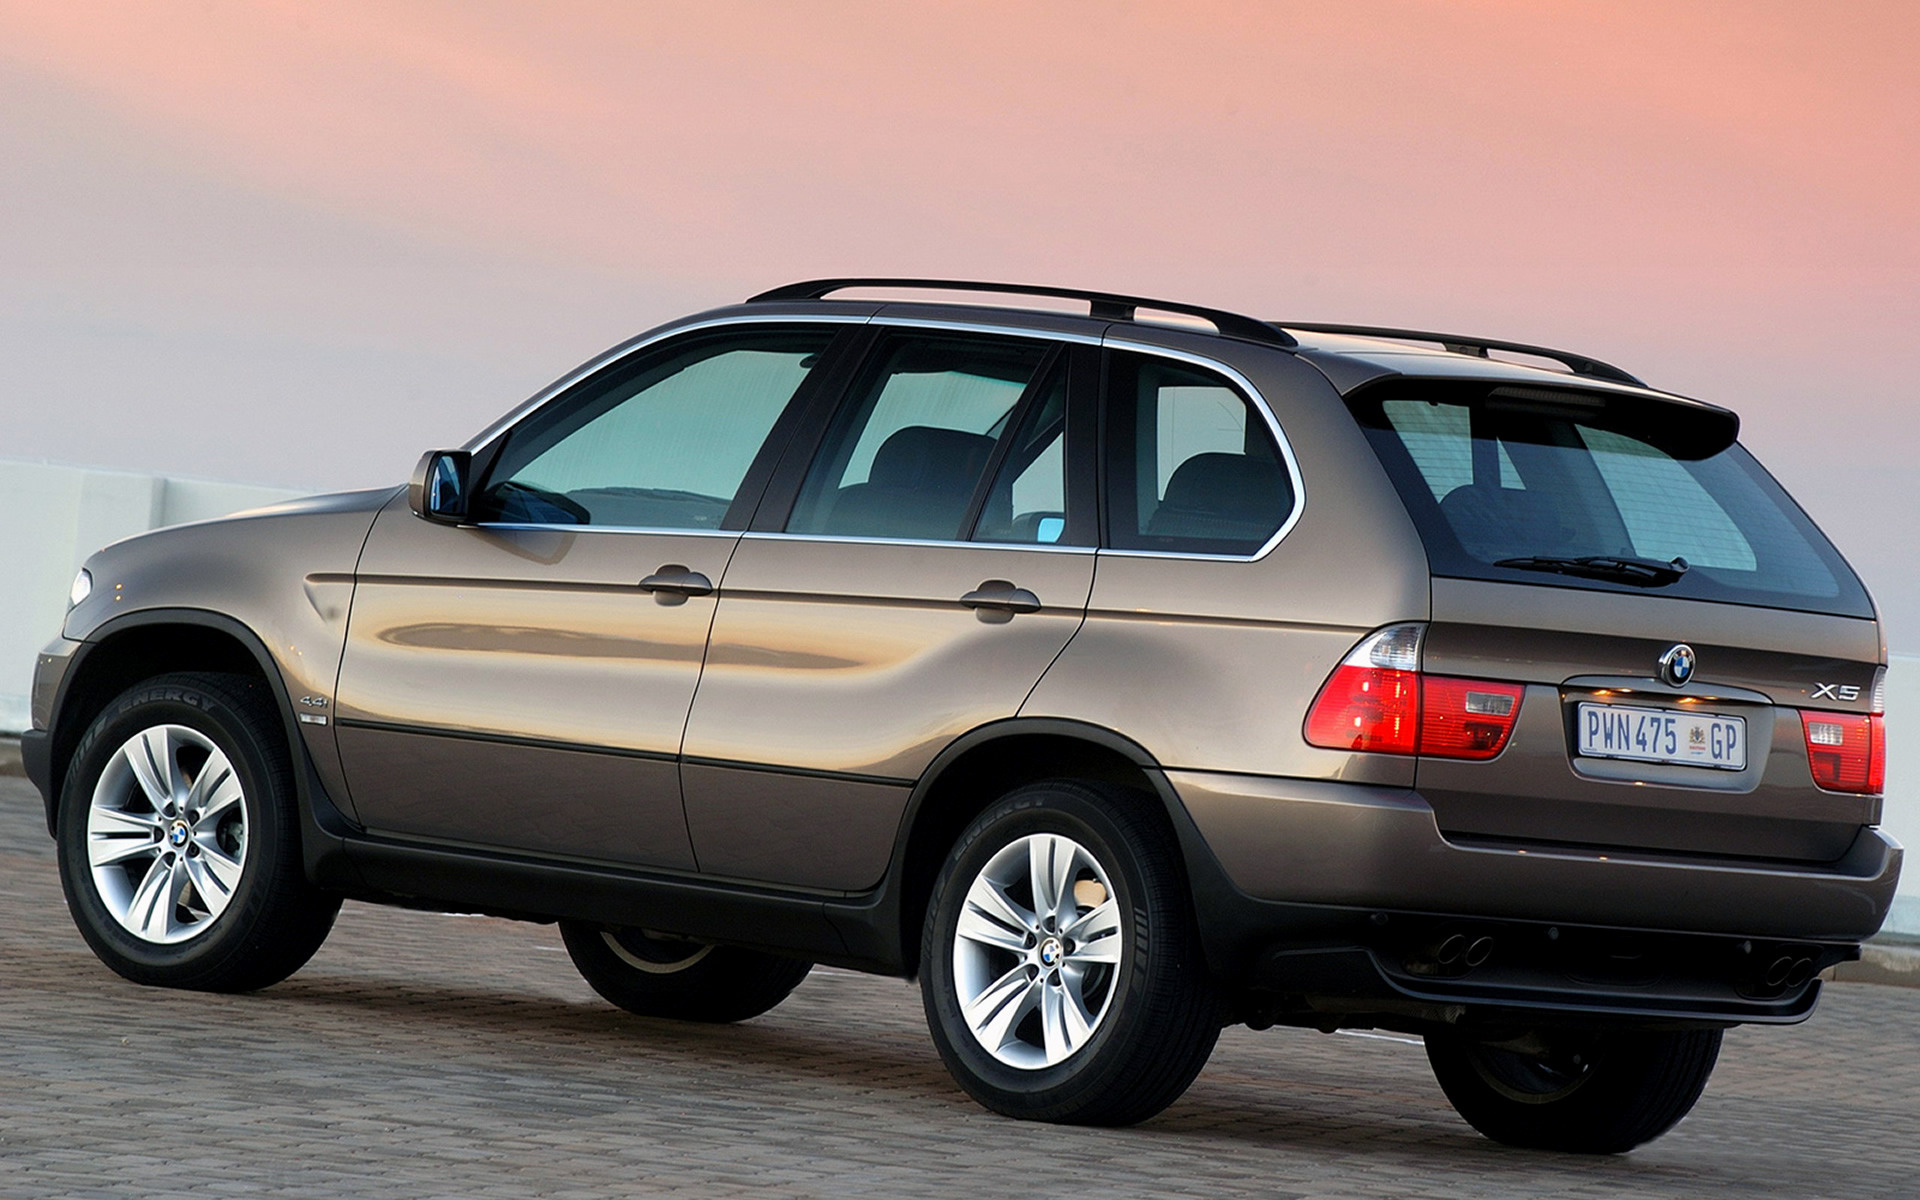 Bmw x5 2003. BMW e53. BMW x5 1 поколение. БМВ х5 первое поколение. BMW x5 1999-2013.